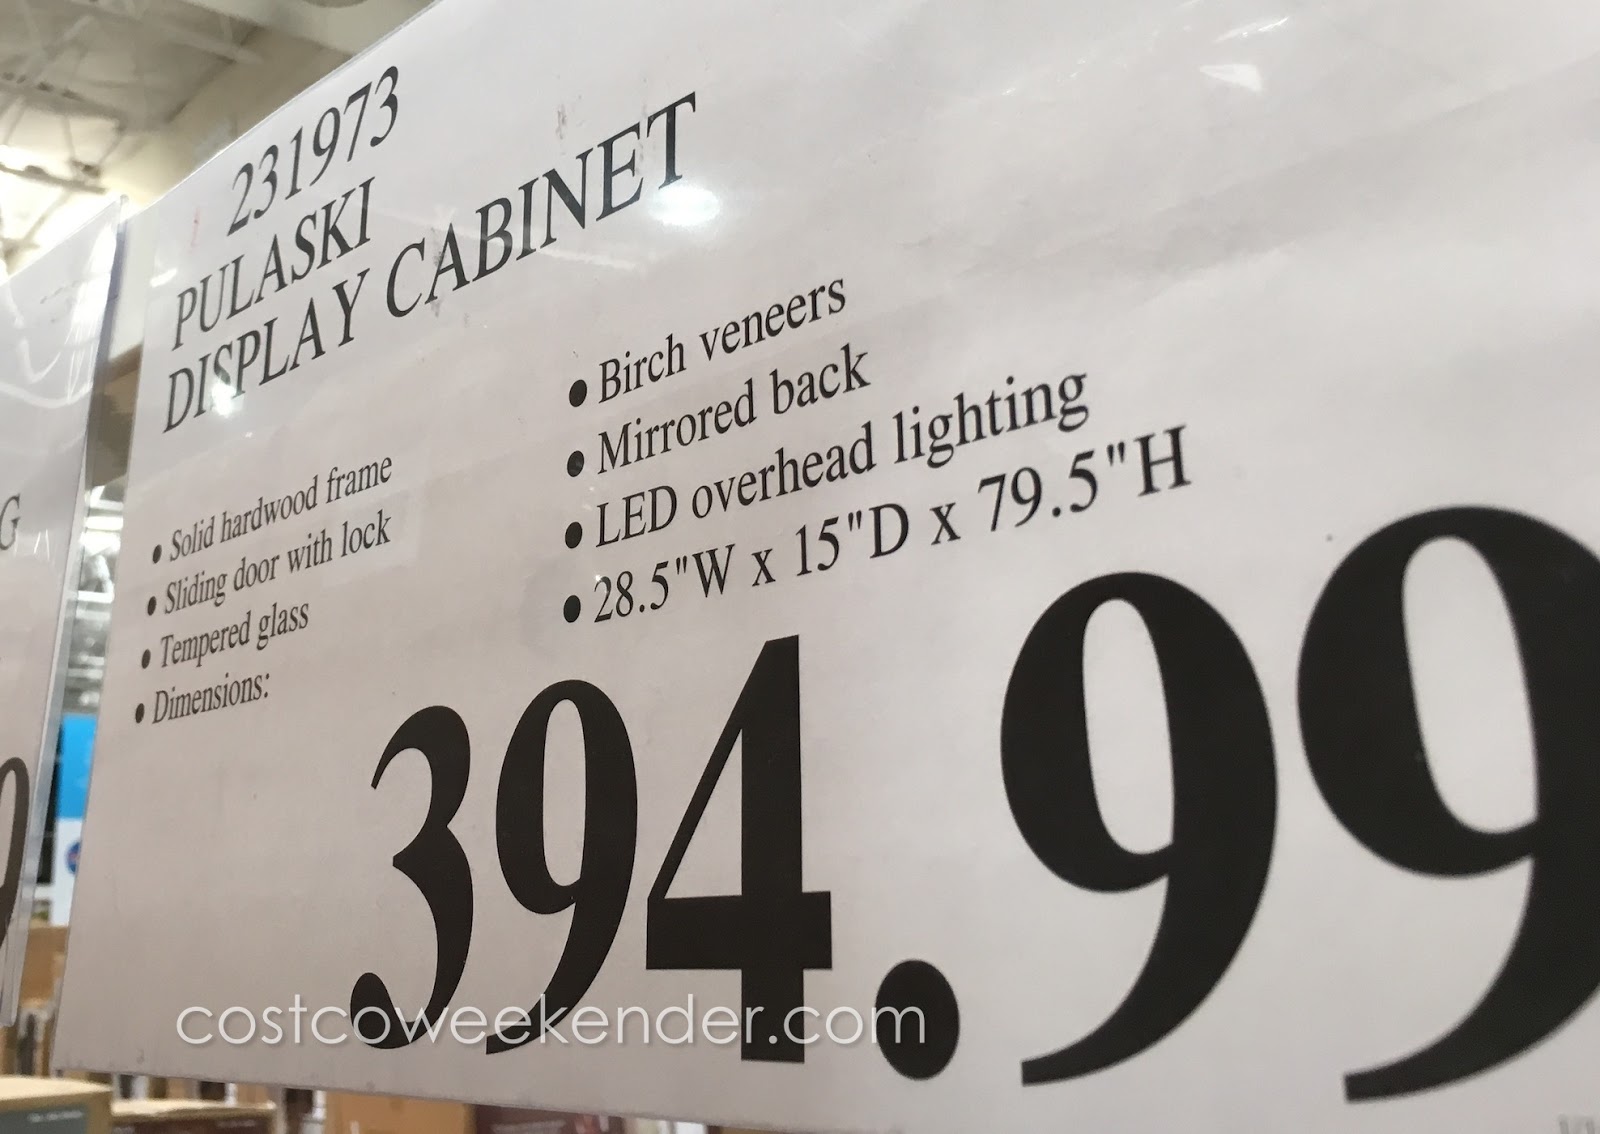 Pulaski Display Cabinet Costco Weekender